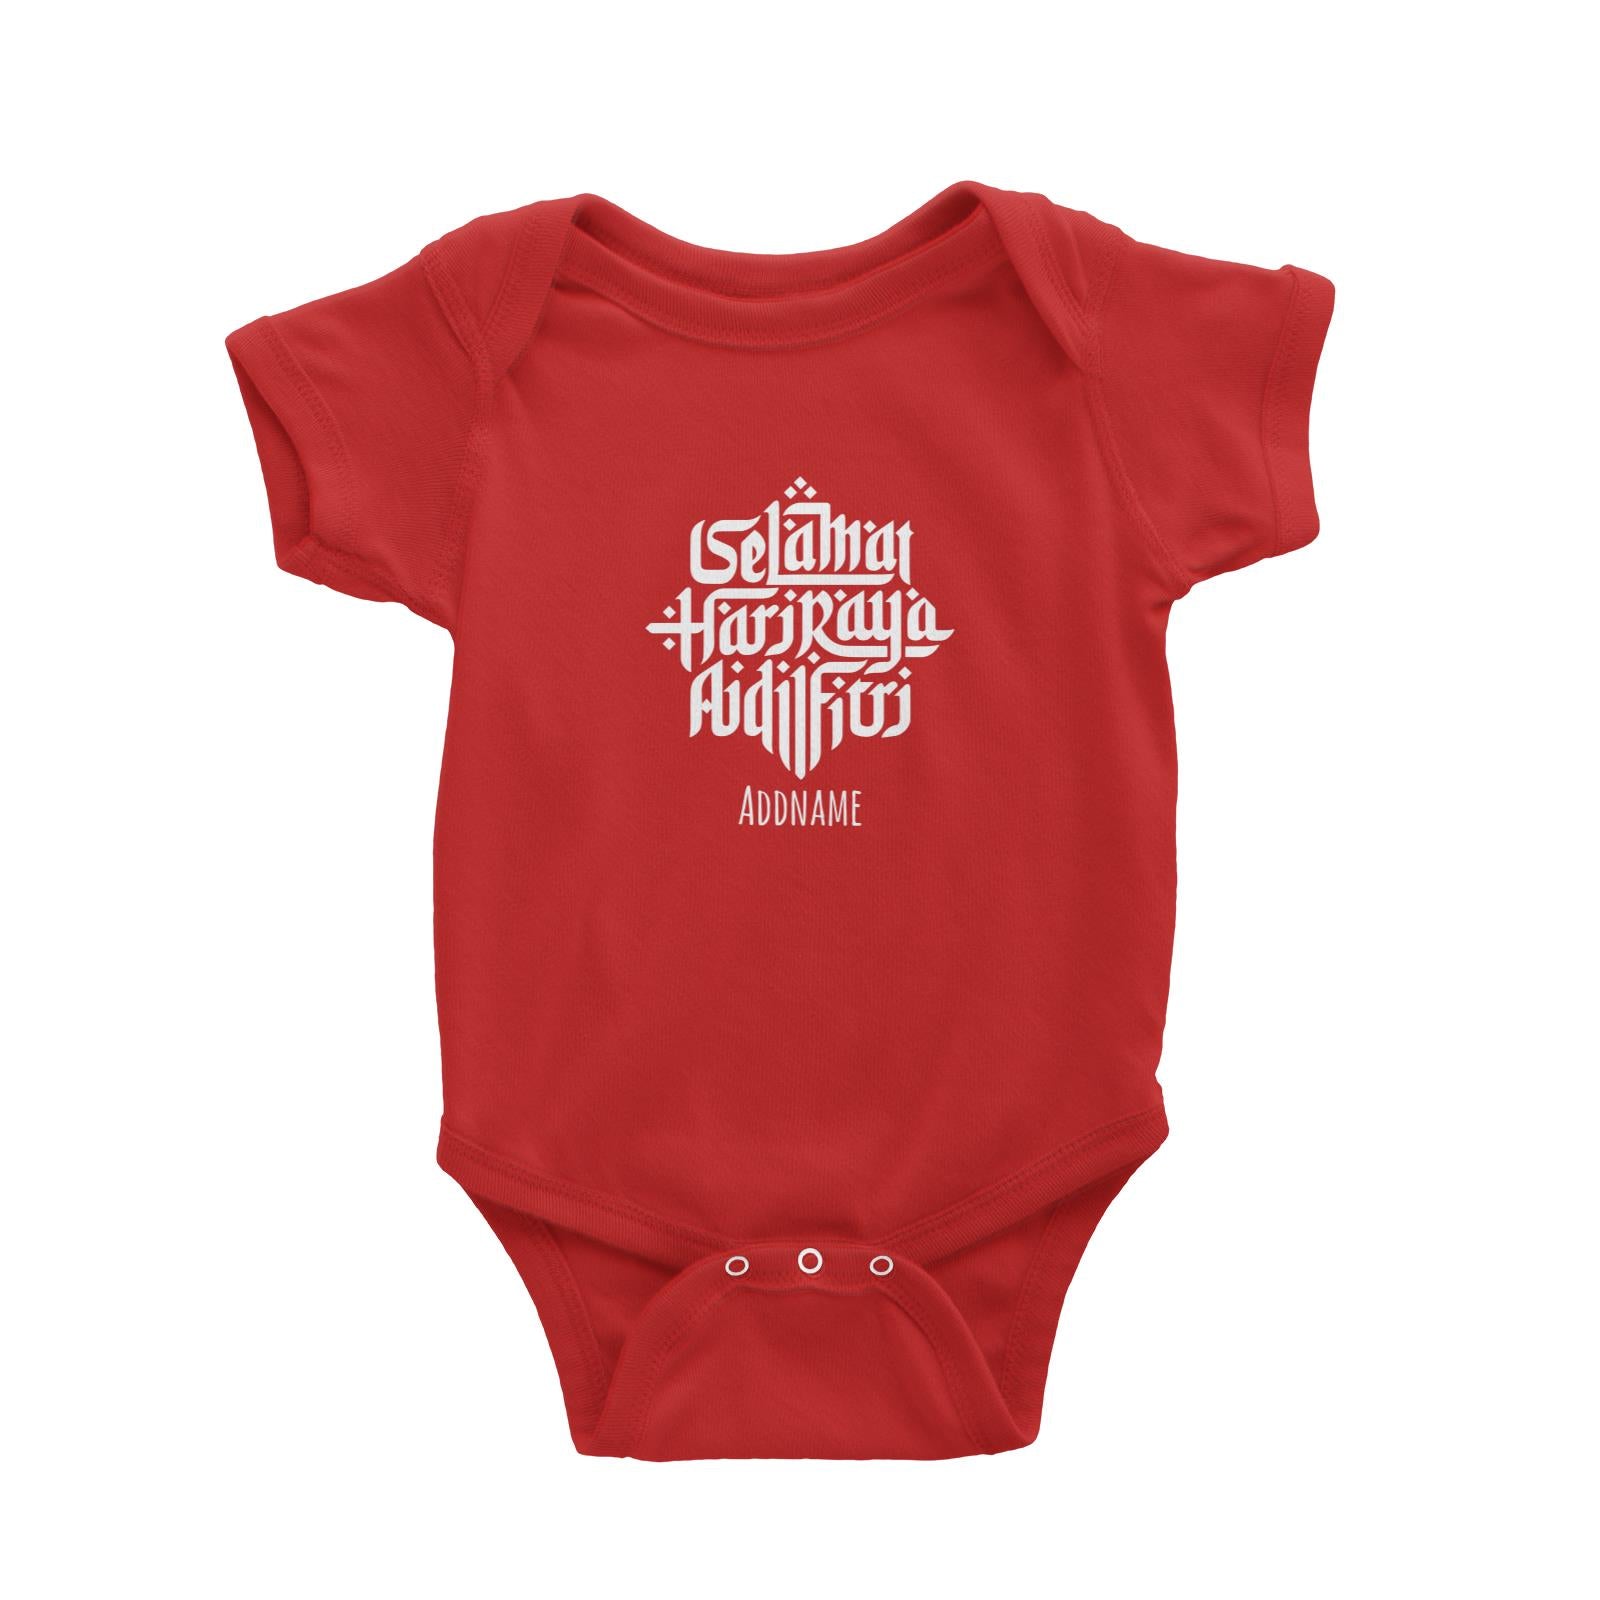 Selamat Hari Raya Aidilfitri Baby Romper  Personalizable Designs